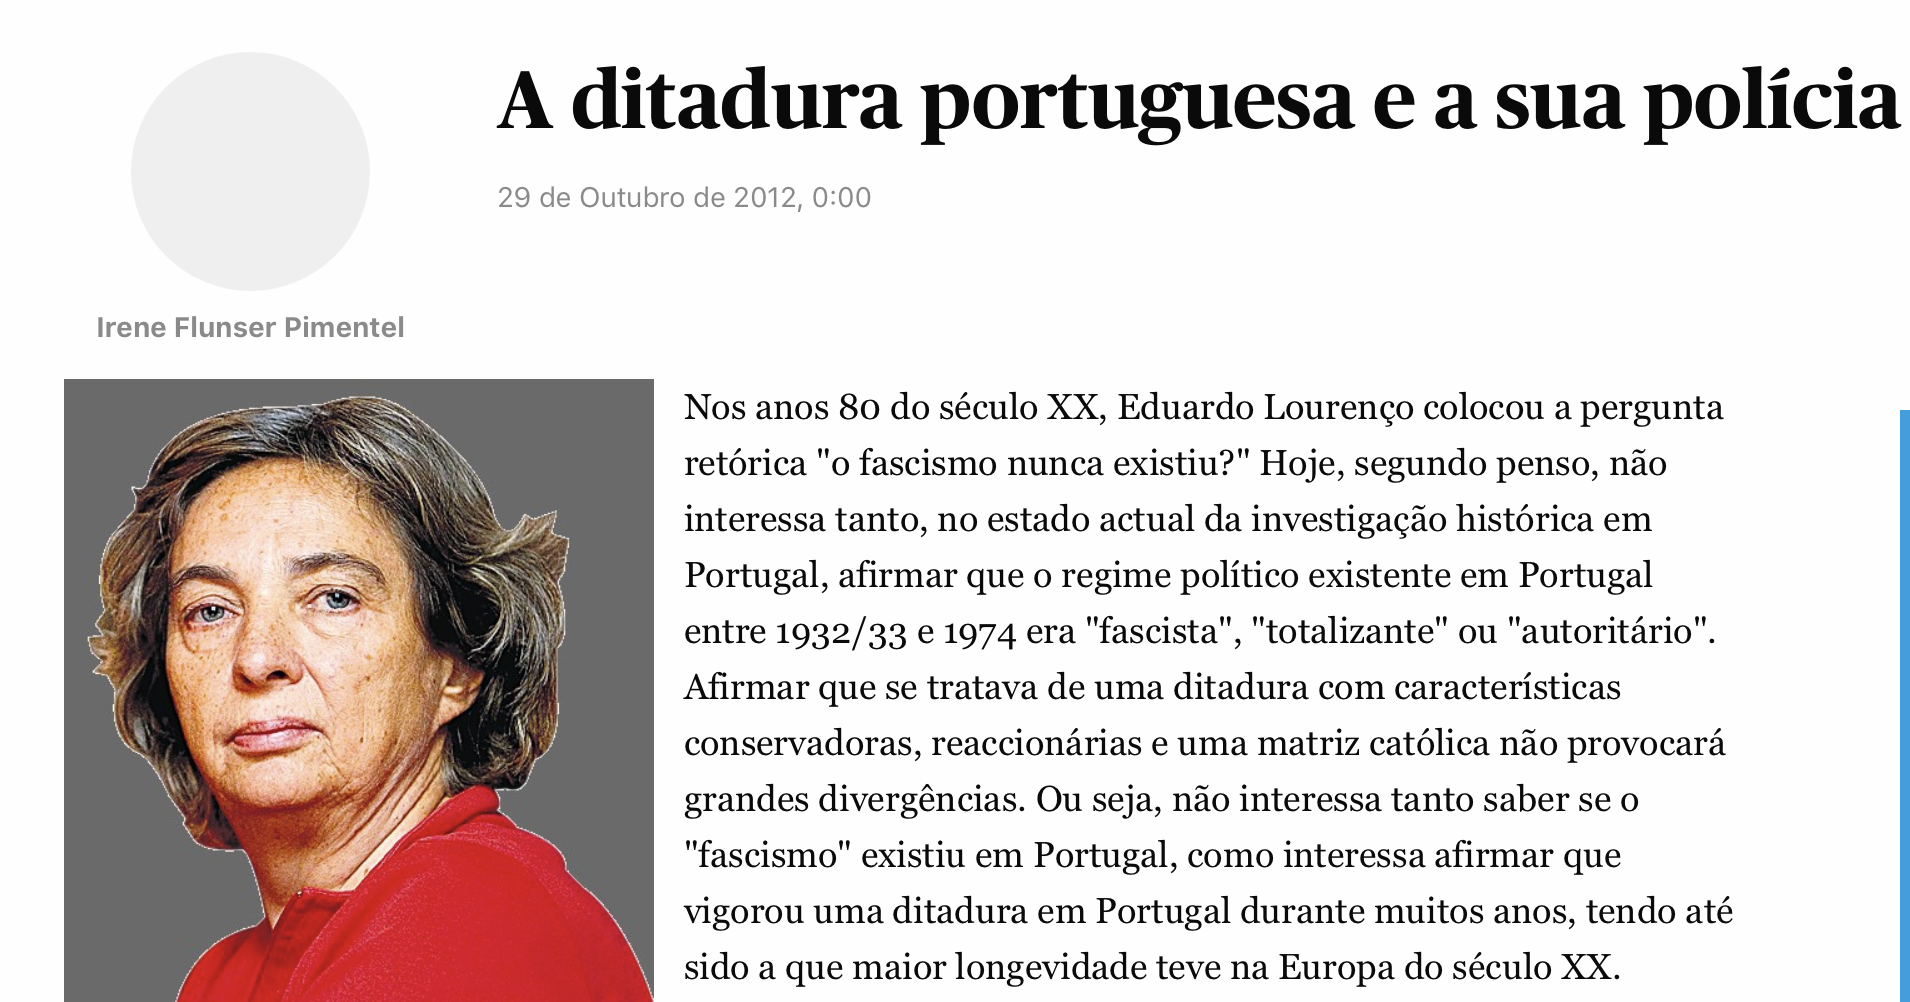 "A ditadura portuguesa e a sua polícia política"